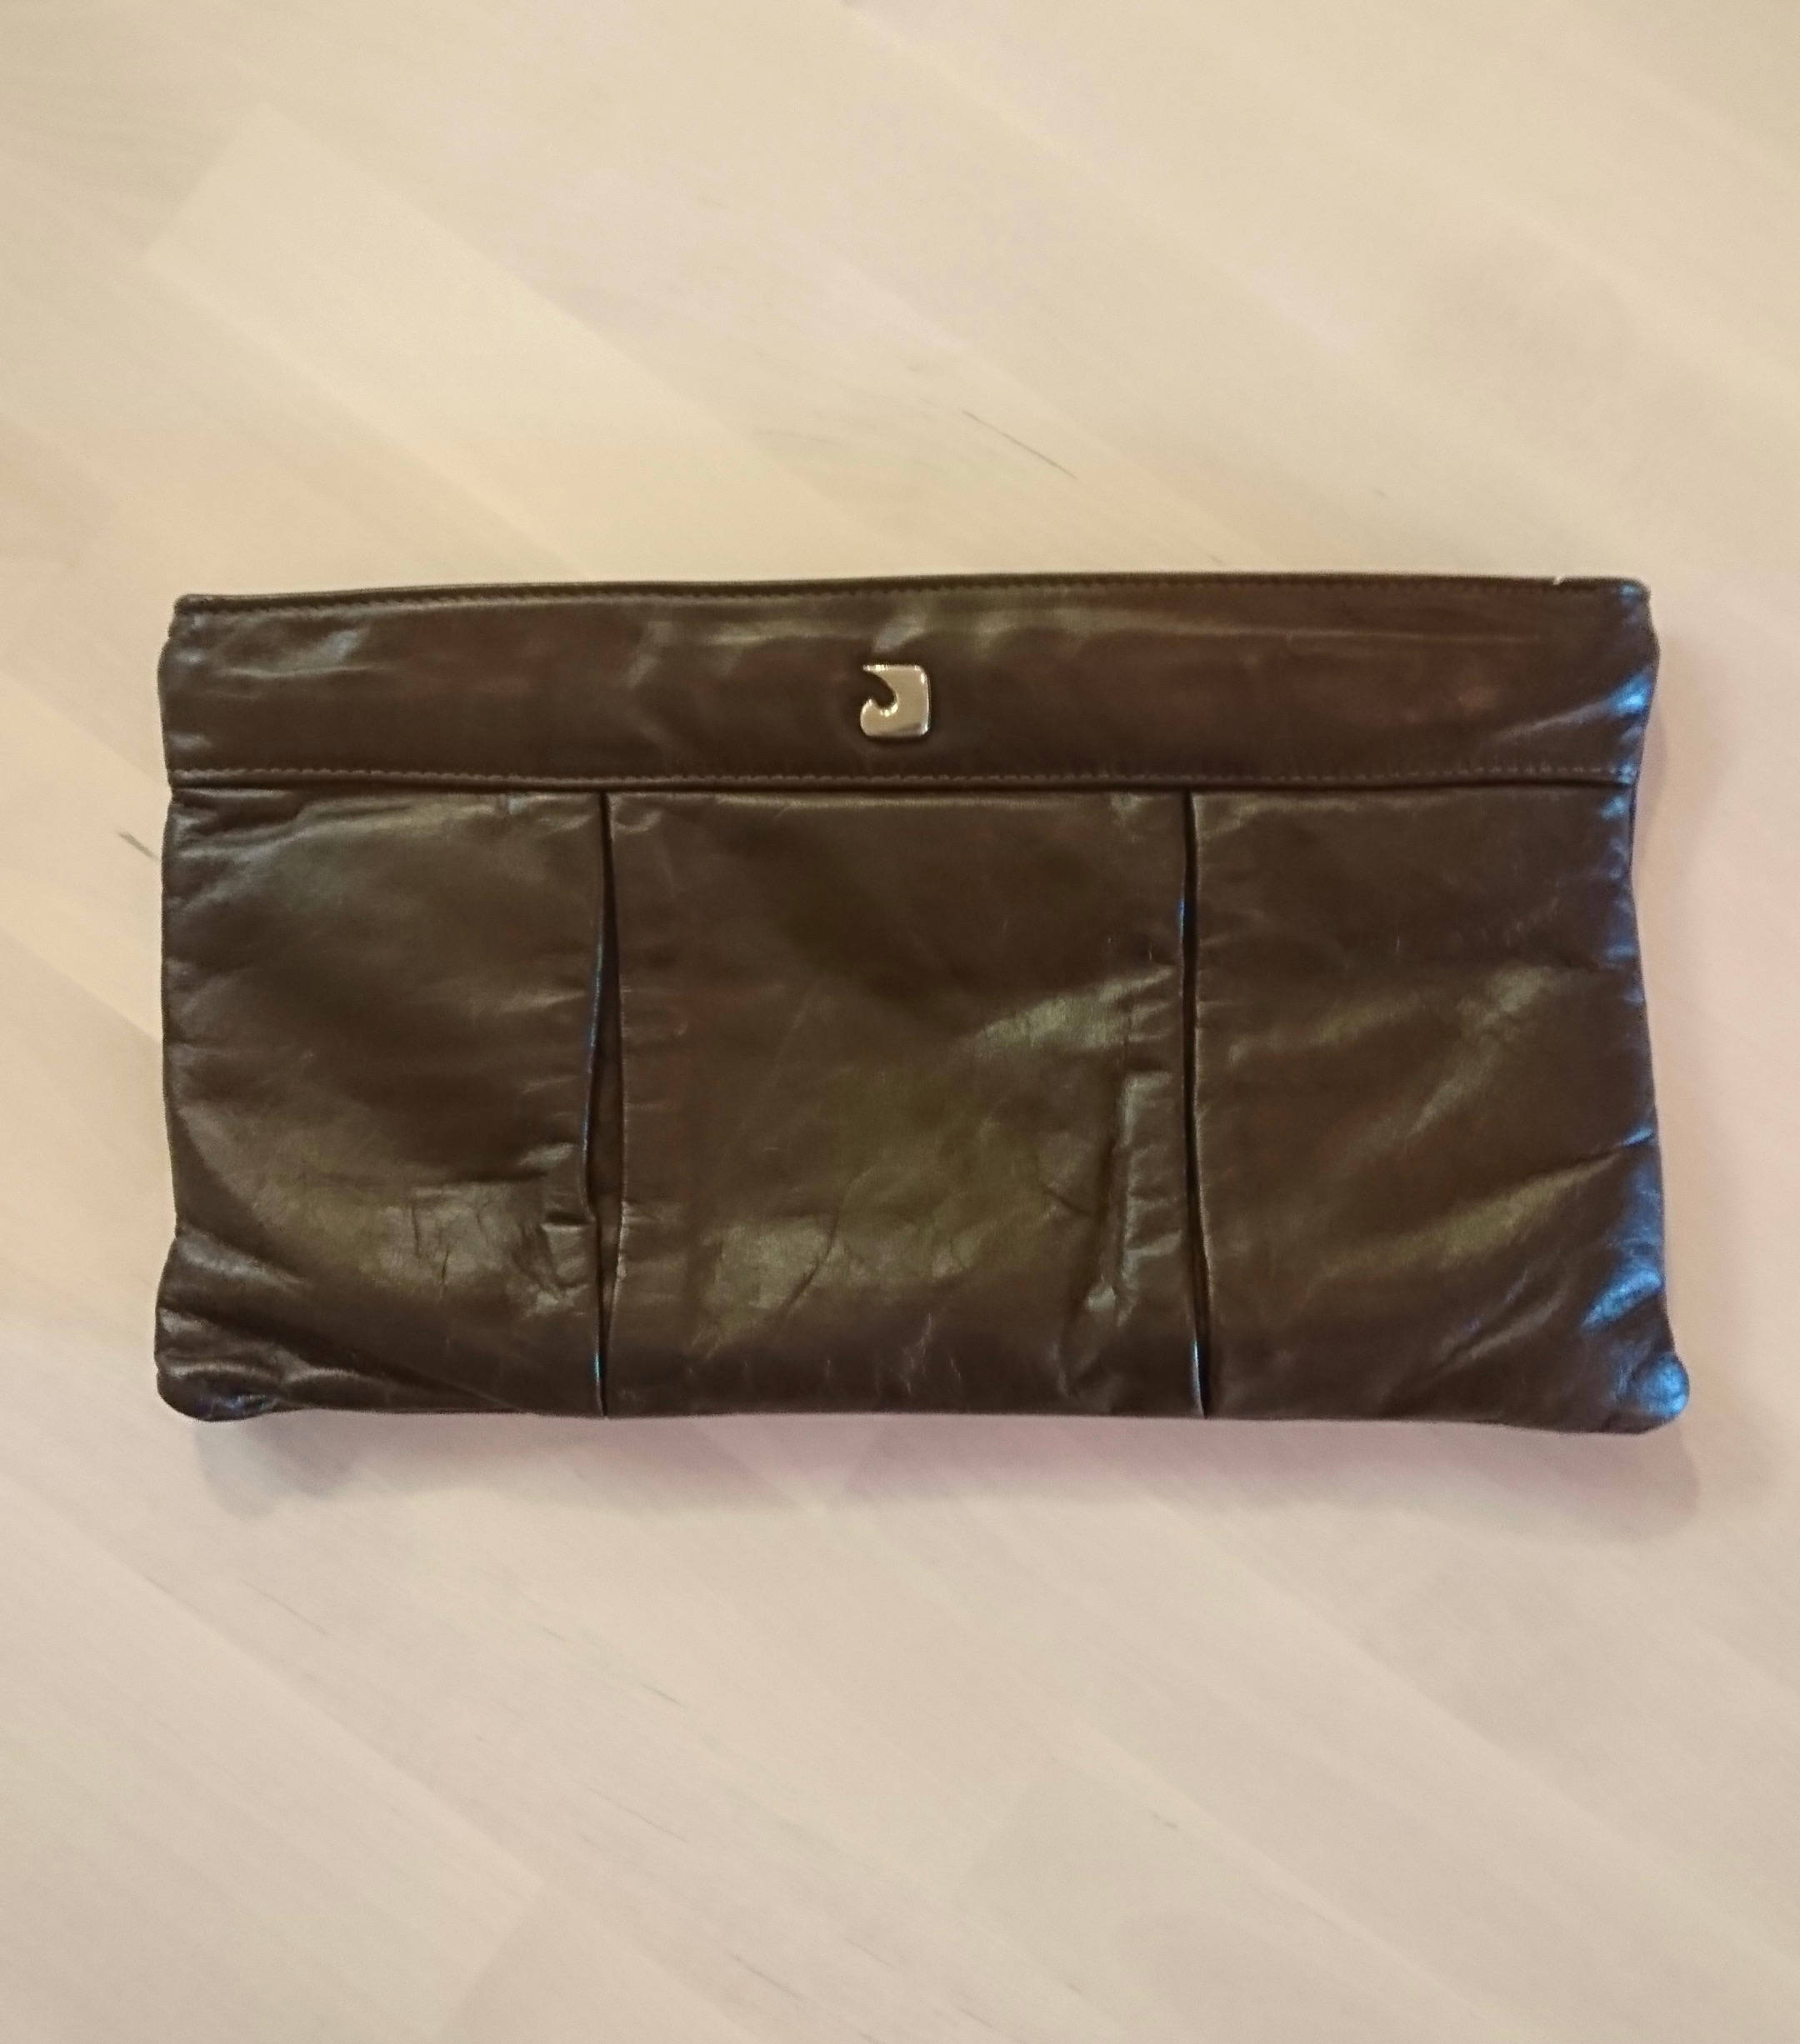 Vintage Juliette Black Leather Handbag Clutch 